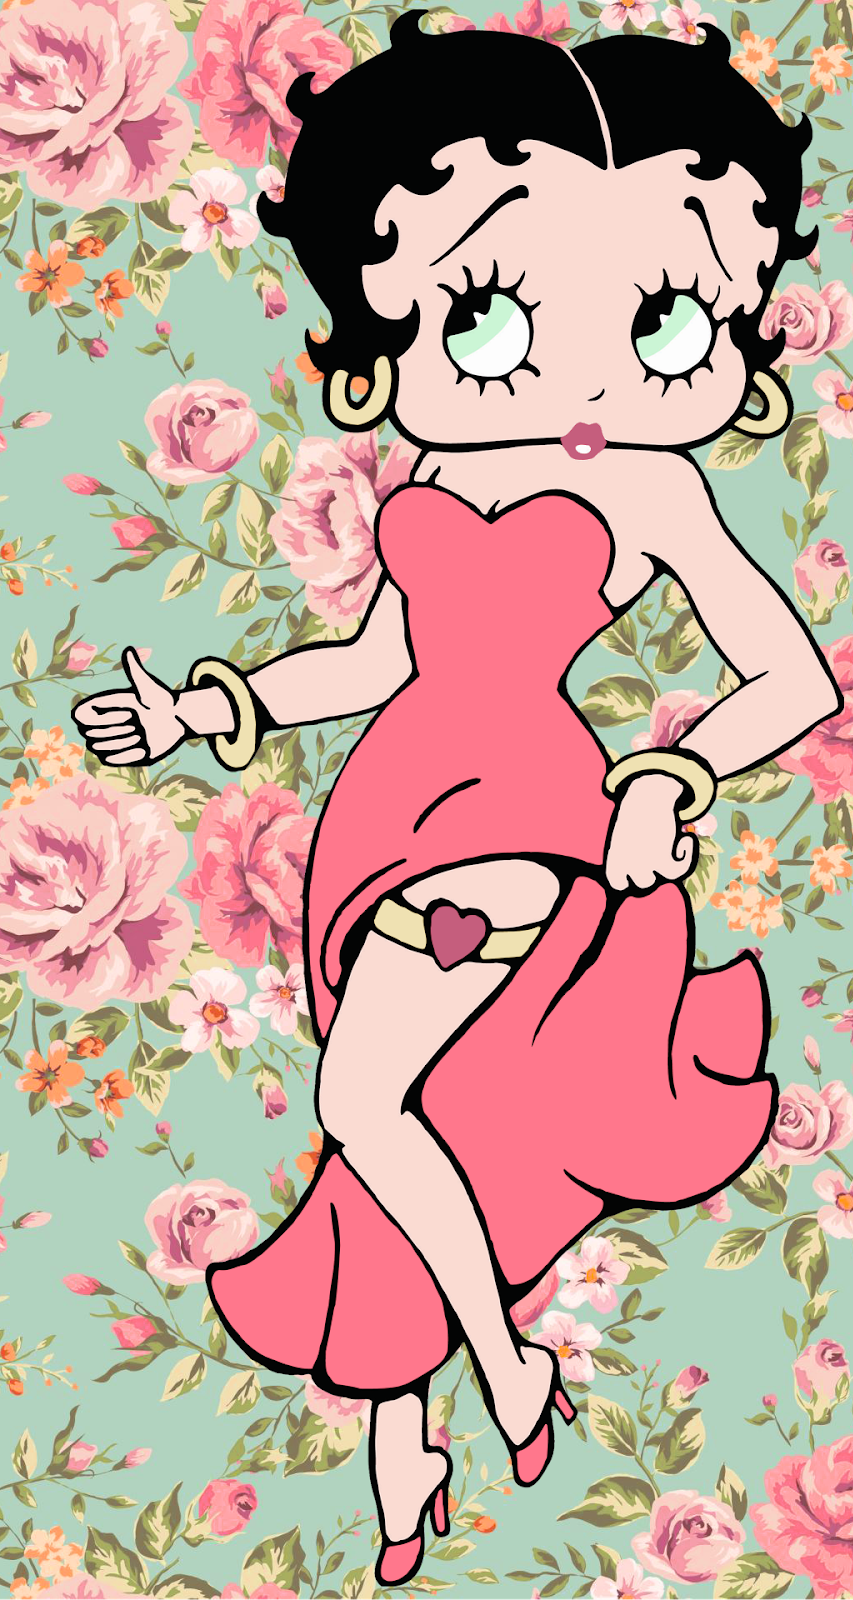 Bettyboop - Eine Popkultur-ikone